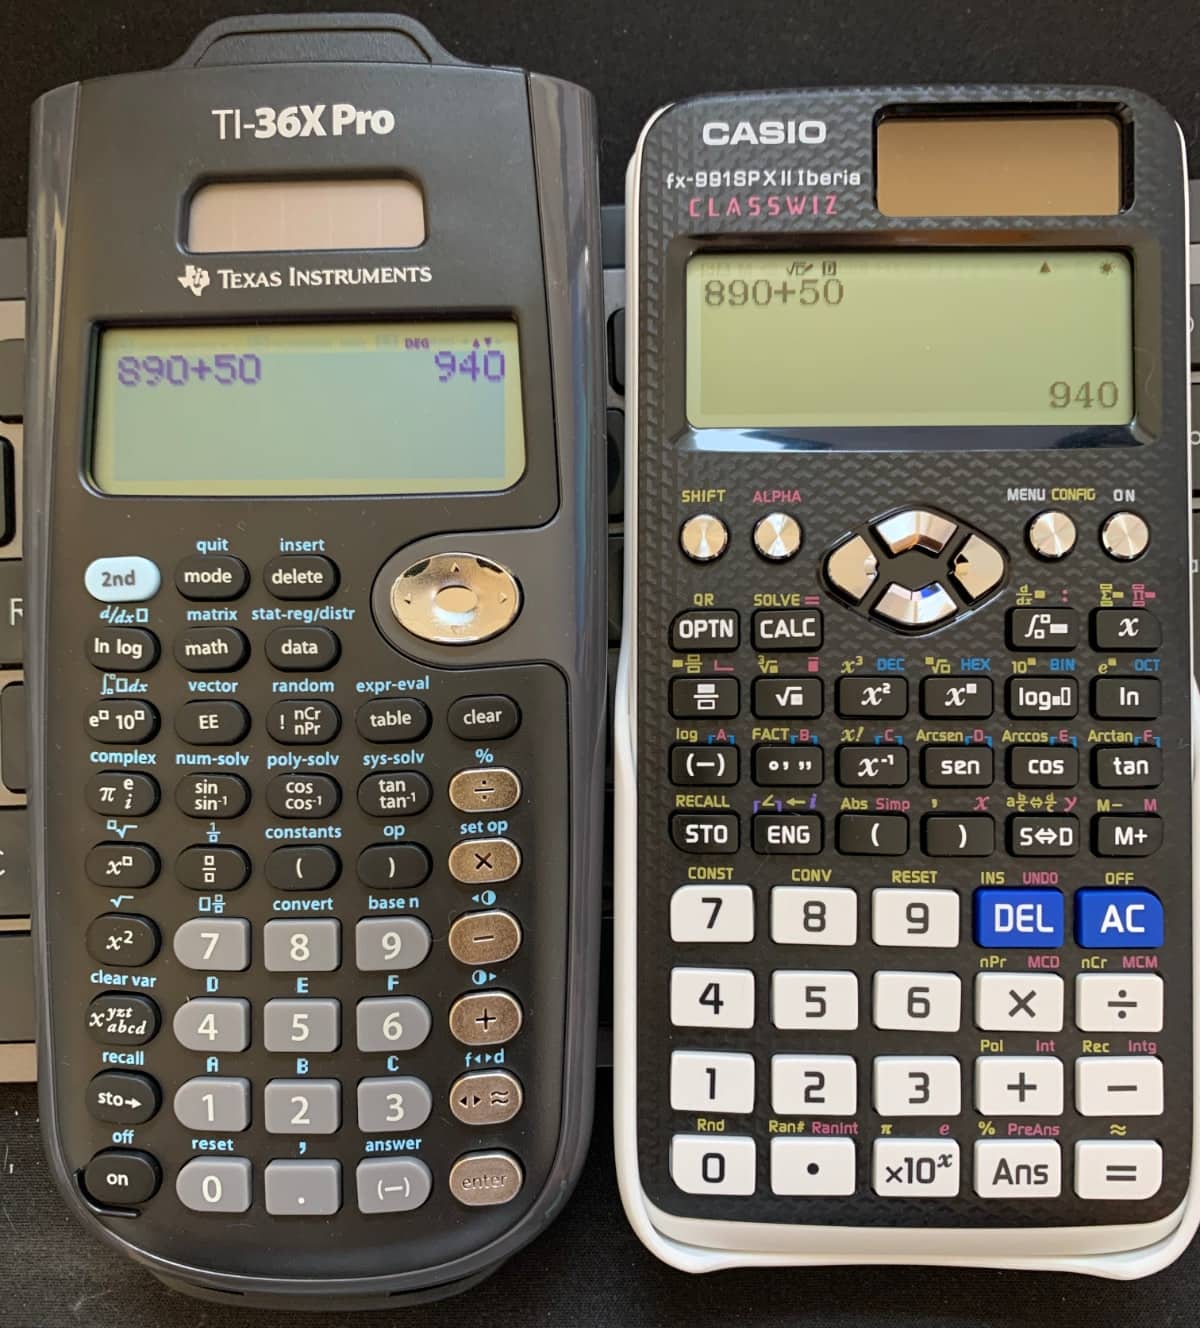 Pantallas de dos calculadoras científicas de alto nivel: TI-36X Pro vs Casio FX-991sp X II Iberia